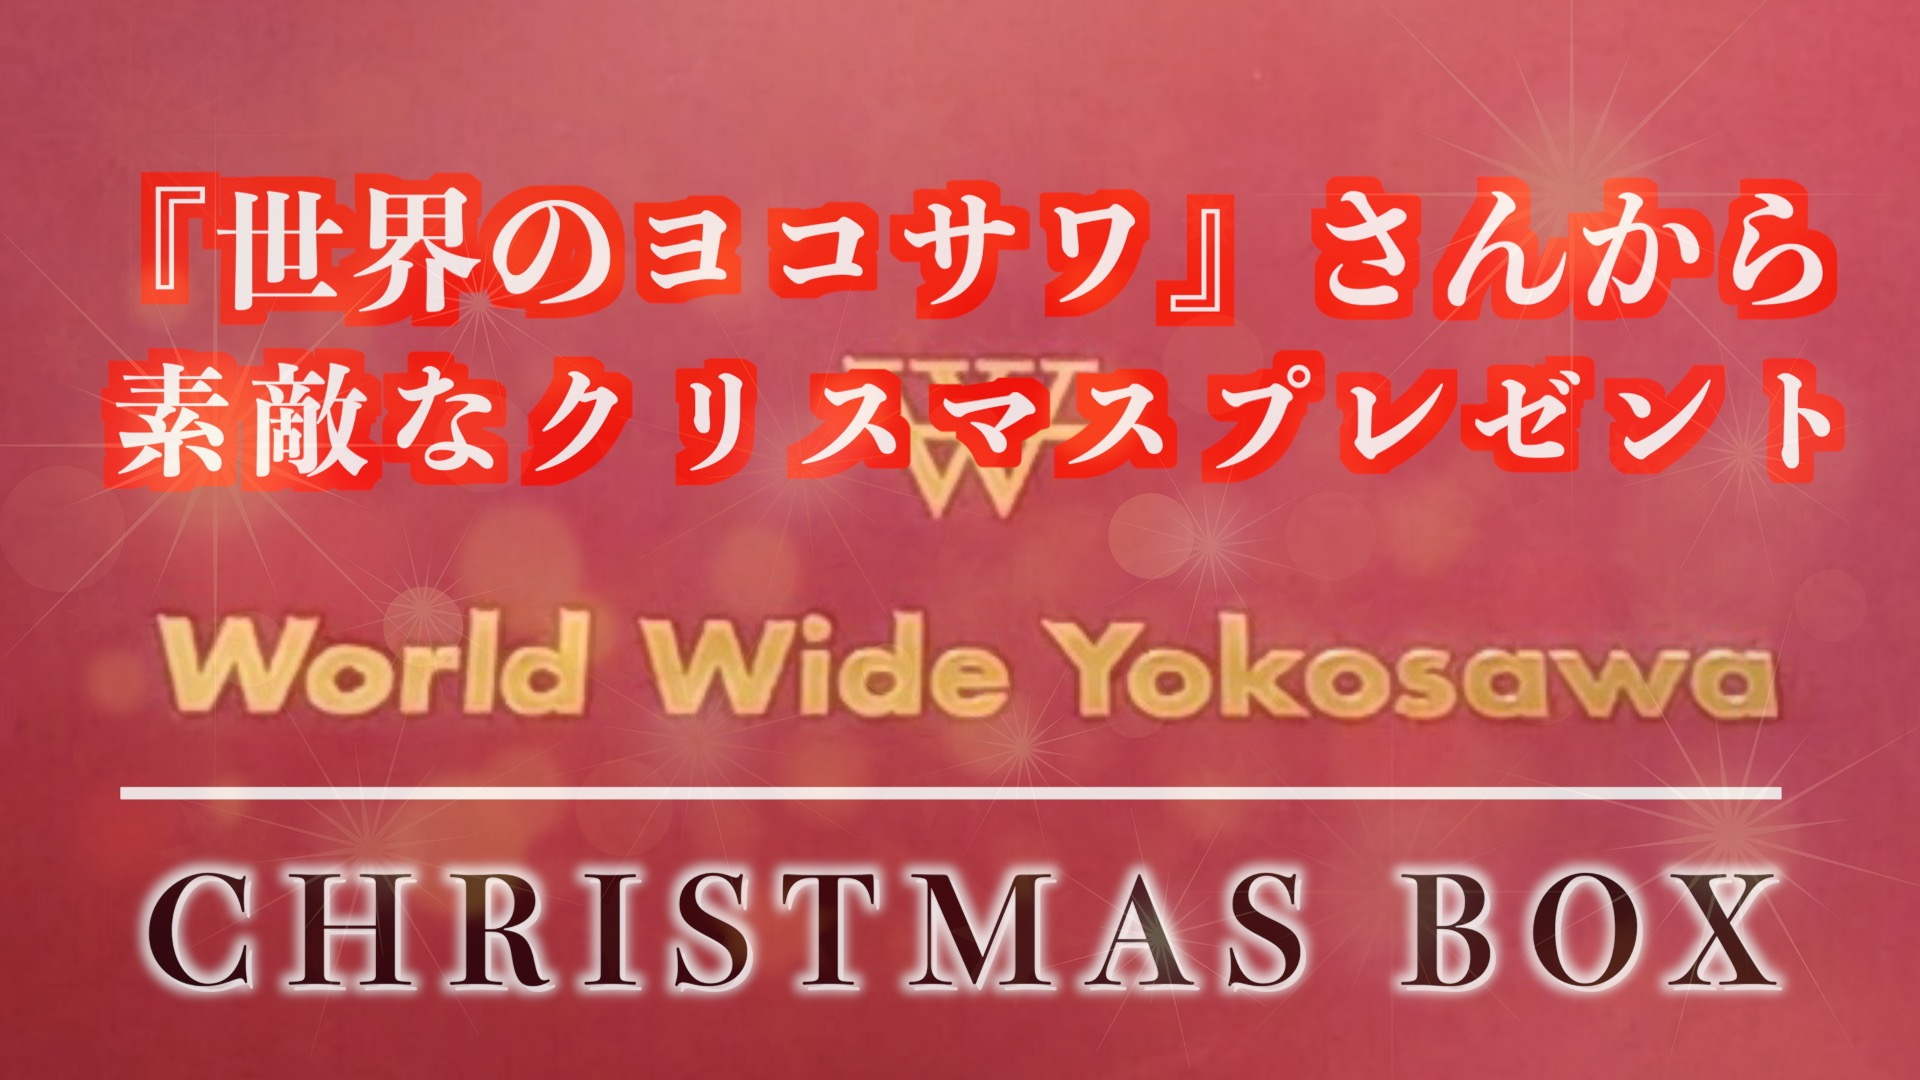 「世界のヨコサワ」クリスマスボックスのアイキャッチ画像